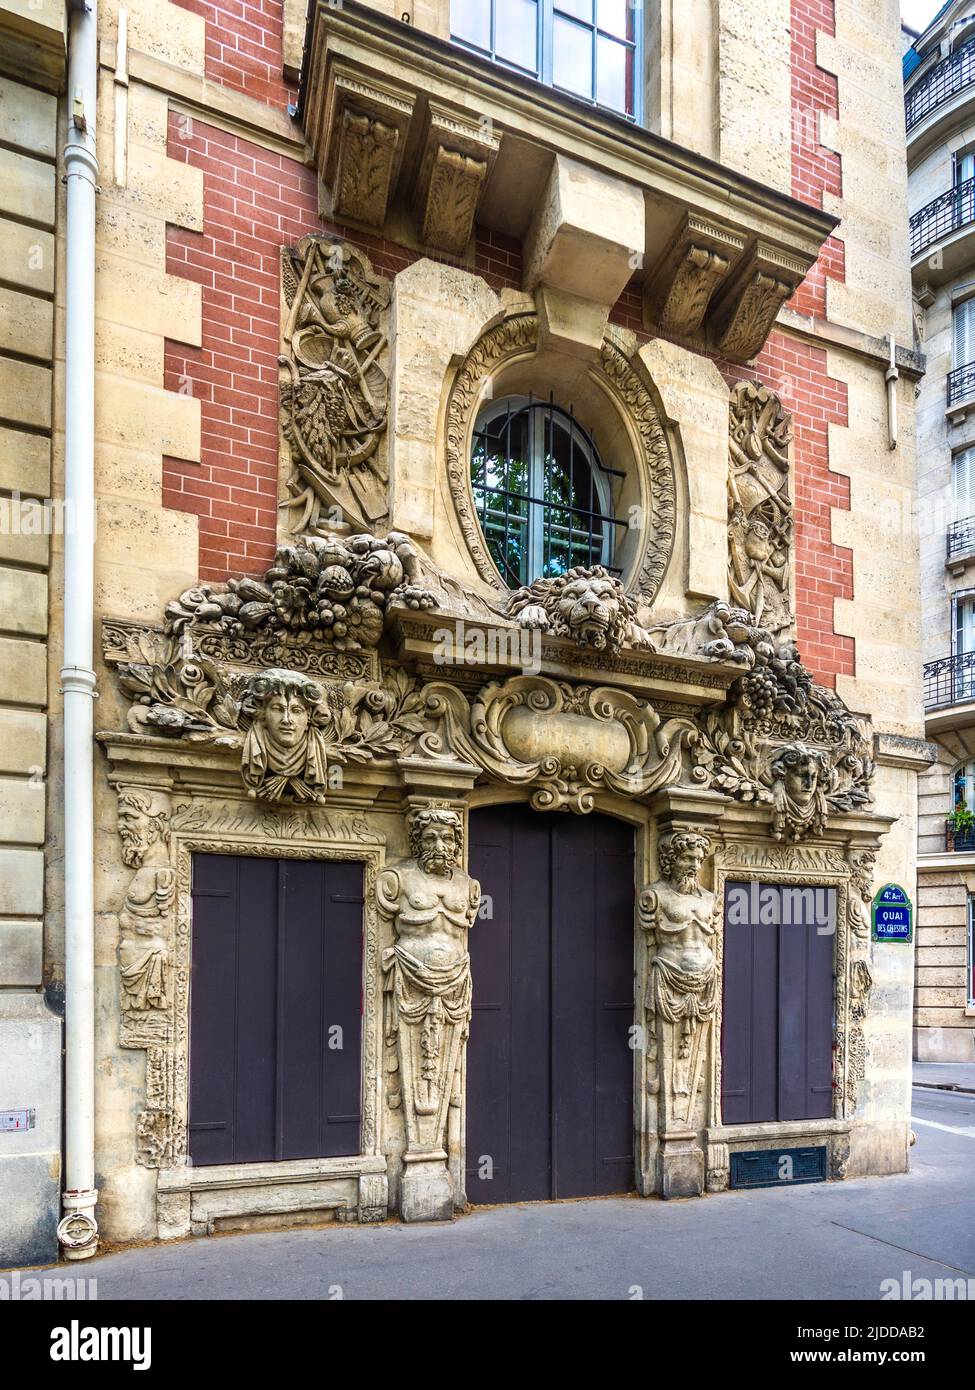 Ornate 16/17th century Baroque sculptural carvings on private house 2 Quai des Celestins, Paris 4, France. Stock Photo